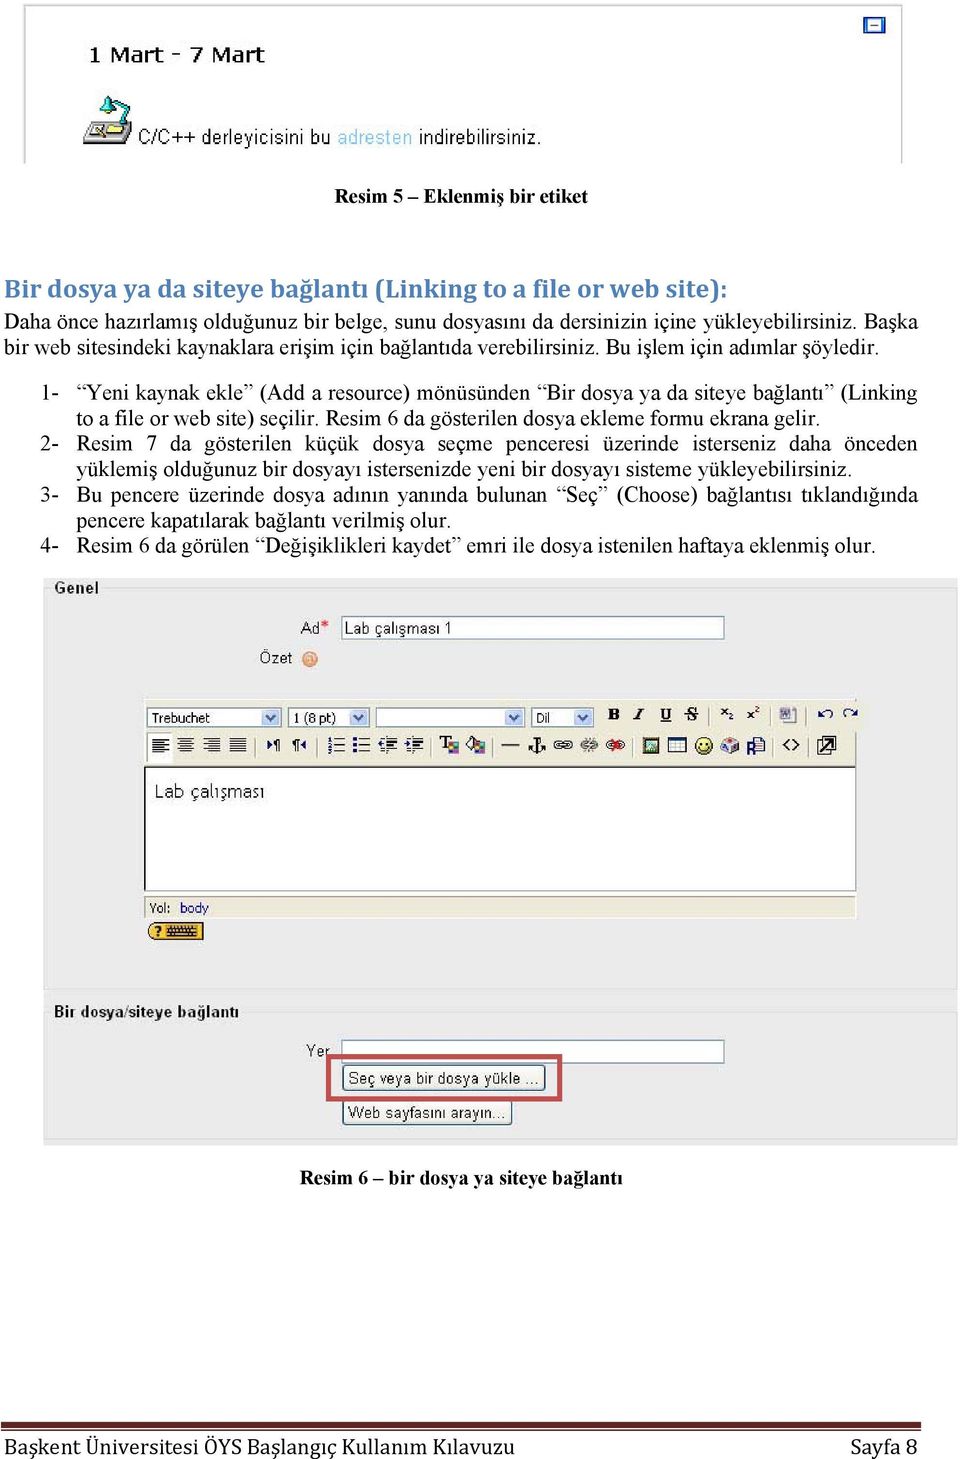 1- Yeni kaynak ekle (Add a resource) mönüsünden Bir dosya ya da siteye bağlantı (Linking to a file or web site) seçilir. Resim 6 da gösterilen dosya ekleme formu ekrana gelir.